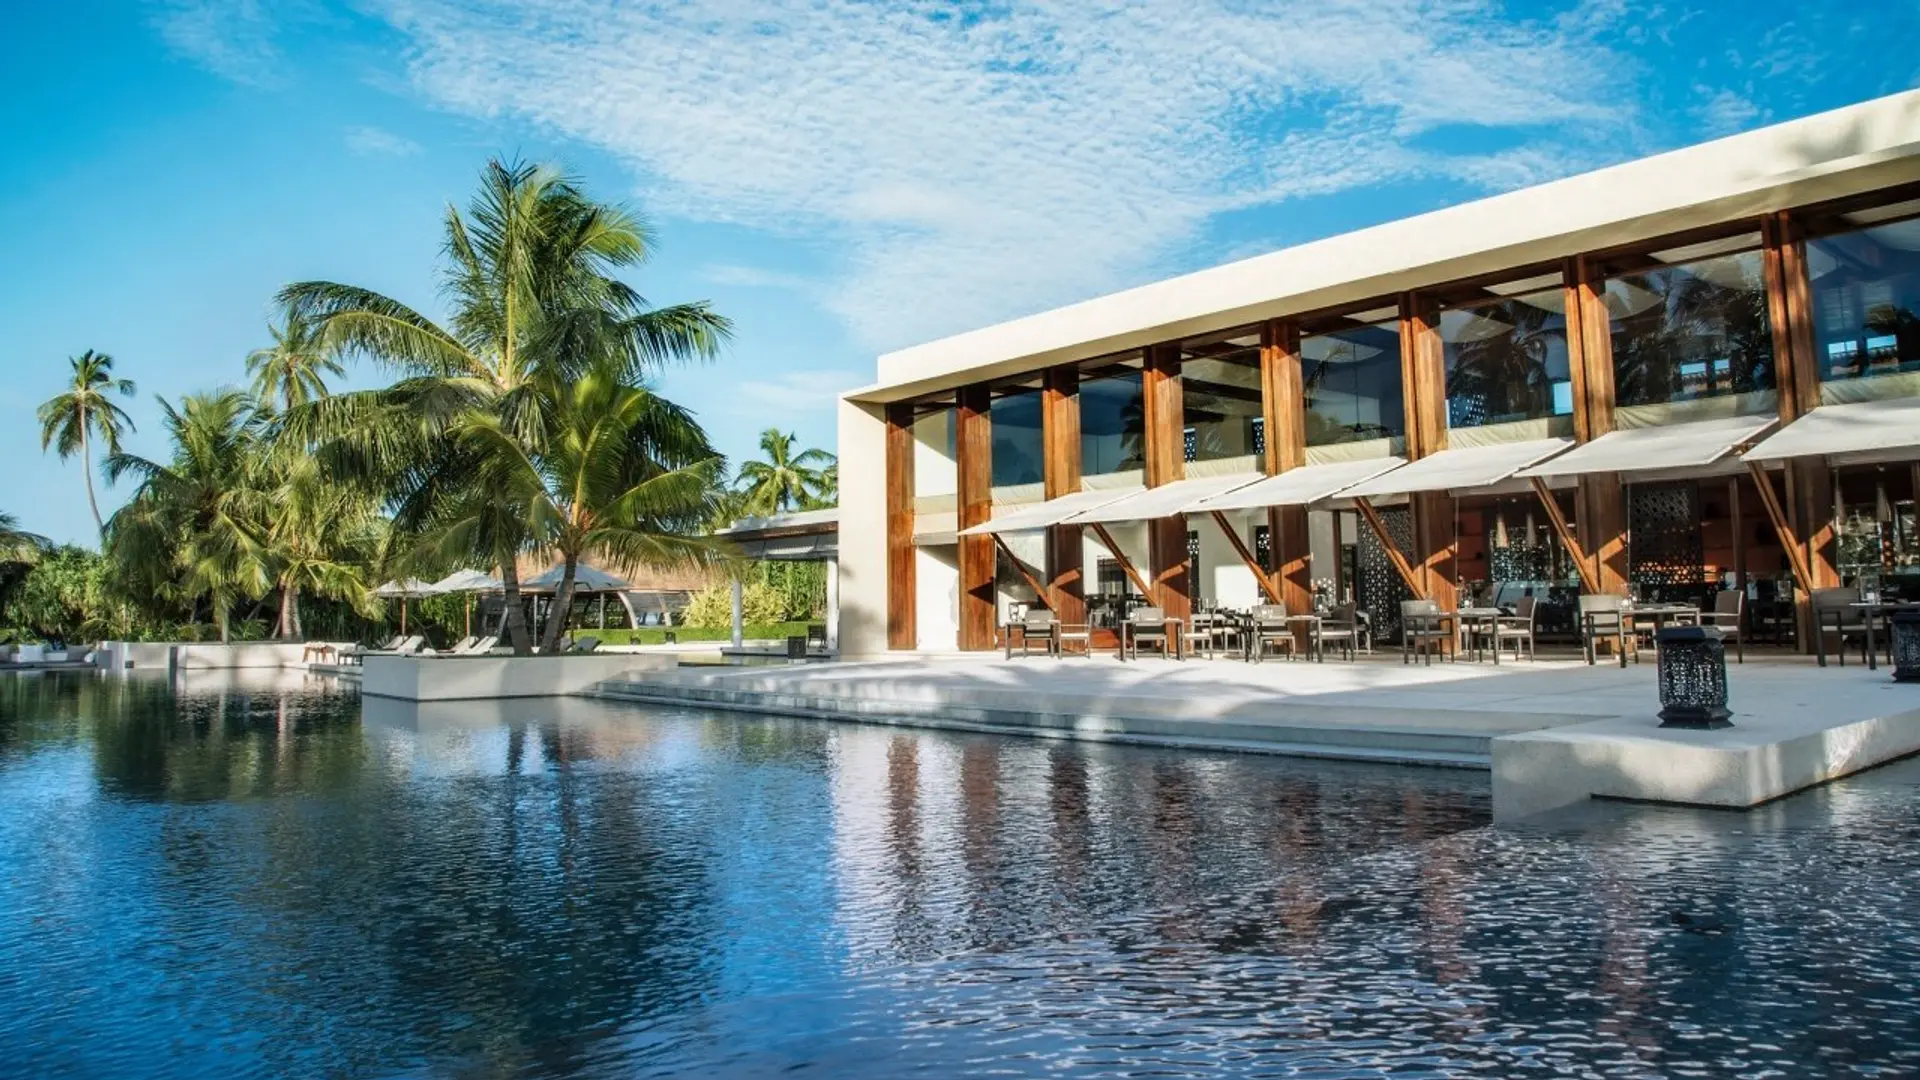 Hotel review Service & Facilities' - Park Hyatt Maldives Hadahaa - 13